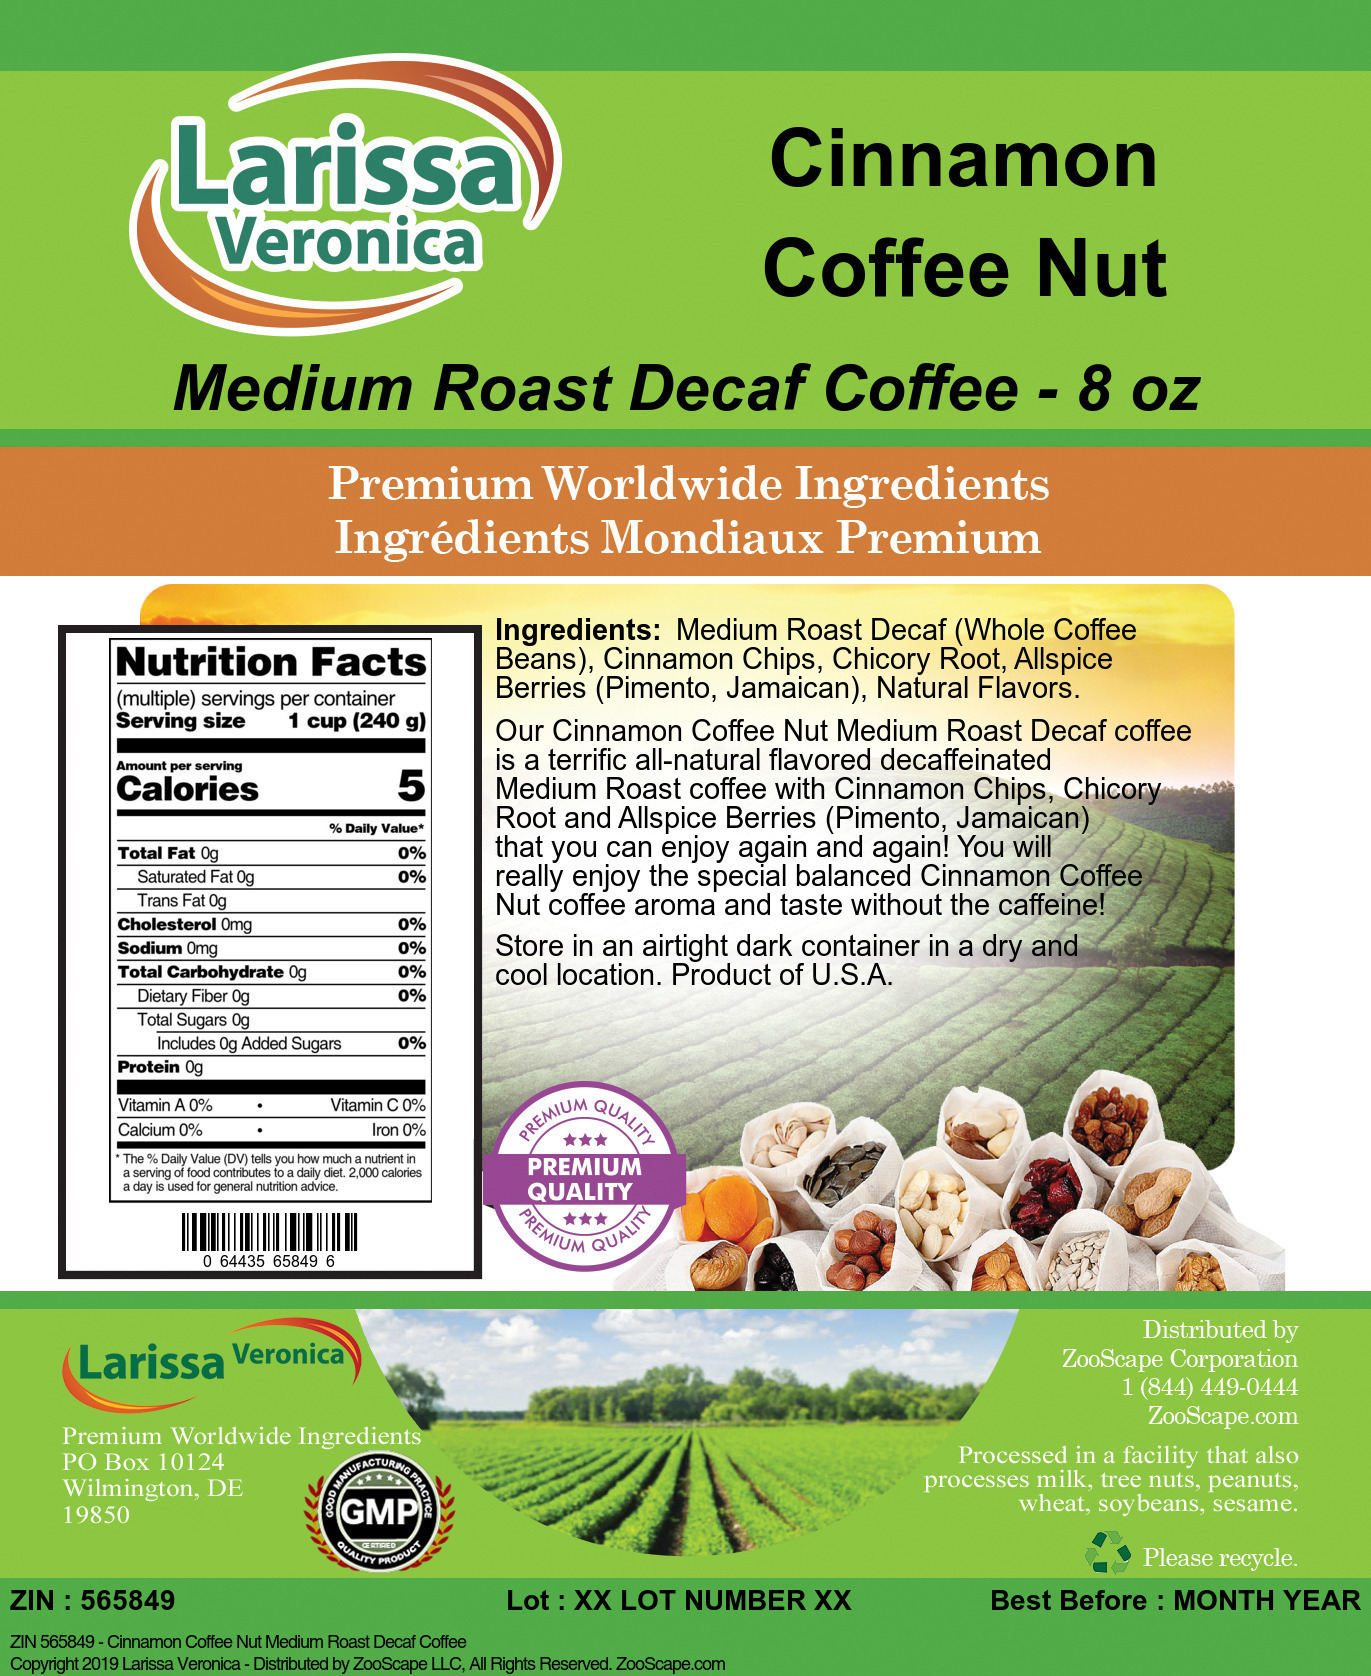 Cinnamon Coffee Nut Medium Roast Decaf Coffee - Label